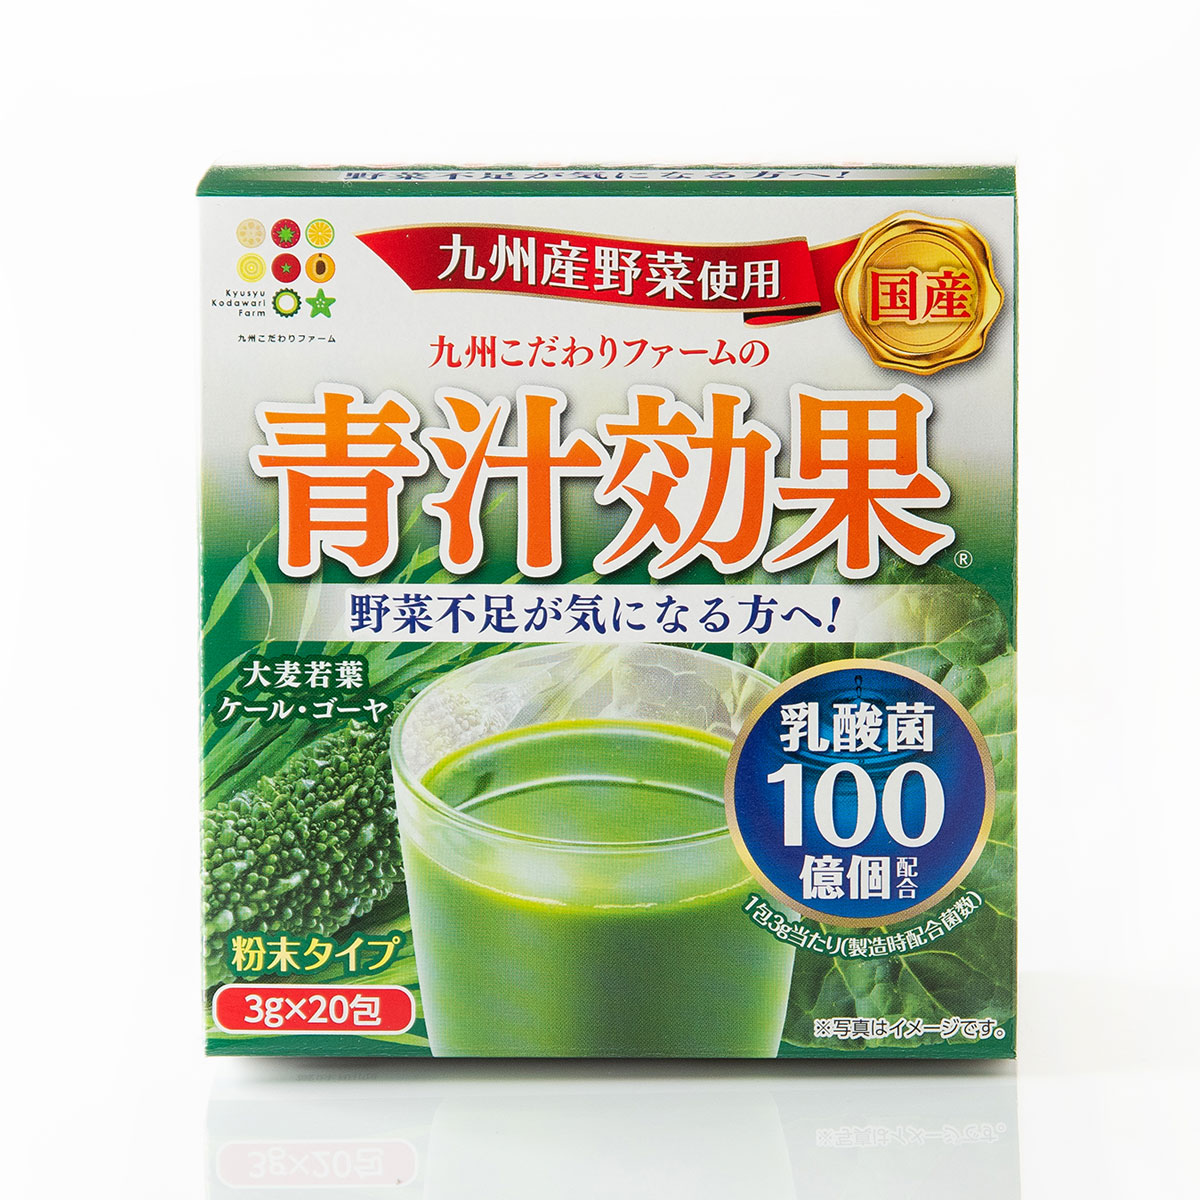 九州産青汁 青汁効果（3g×80包）送料無料 原料はすべて九州産 乳酸菌配合